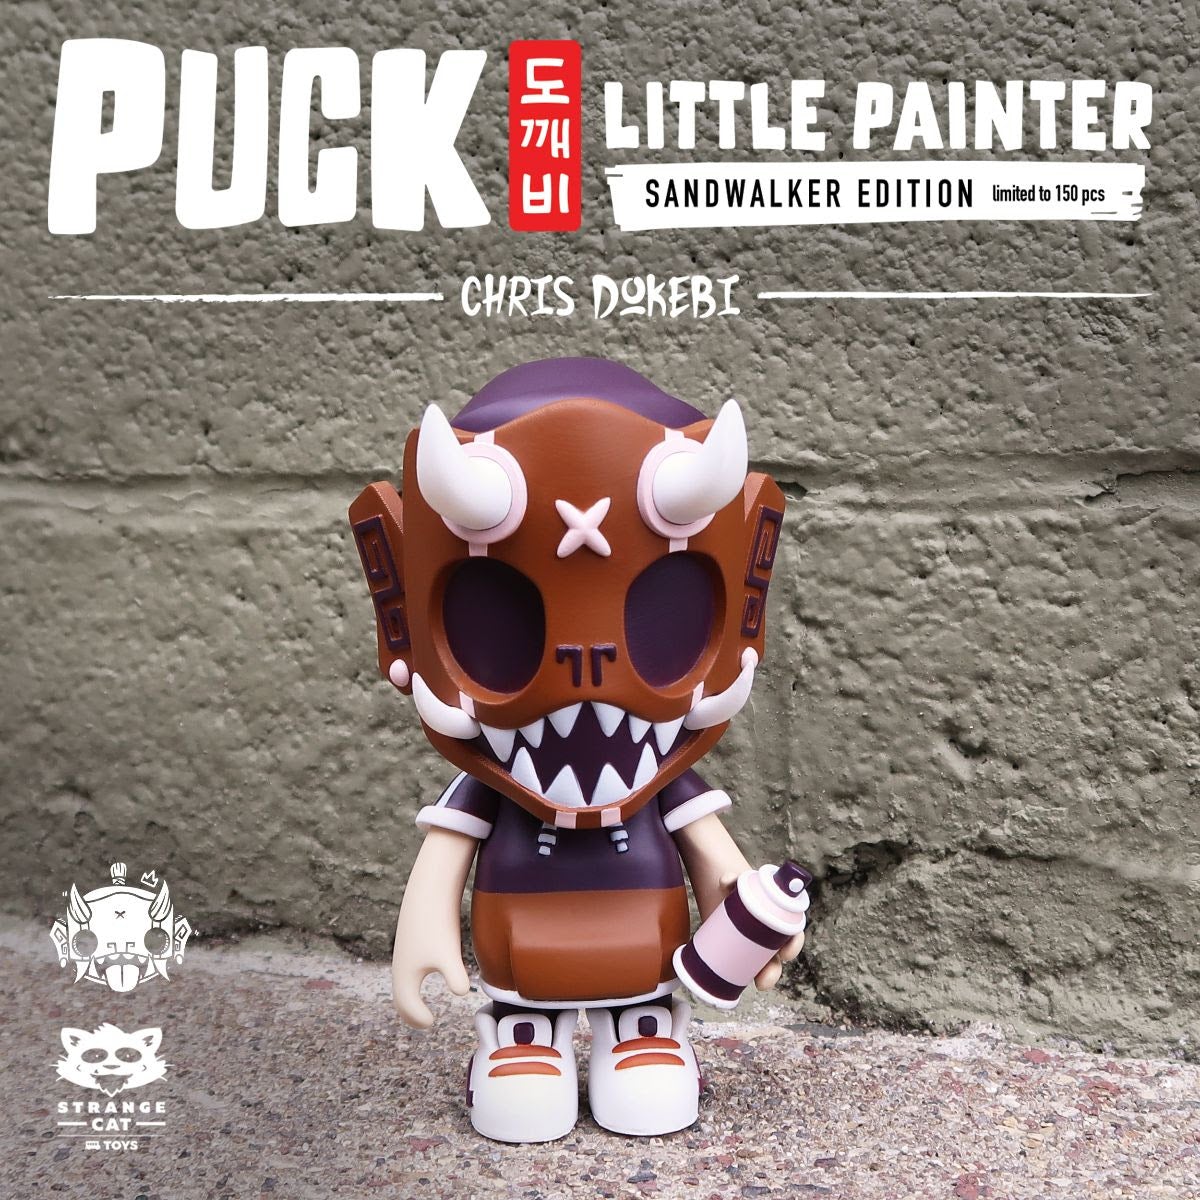 Puck Little Painter Sand Walker 13cm vinyl figure by Chris Dokebi x Strangecat Toys Available Now ! ! !